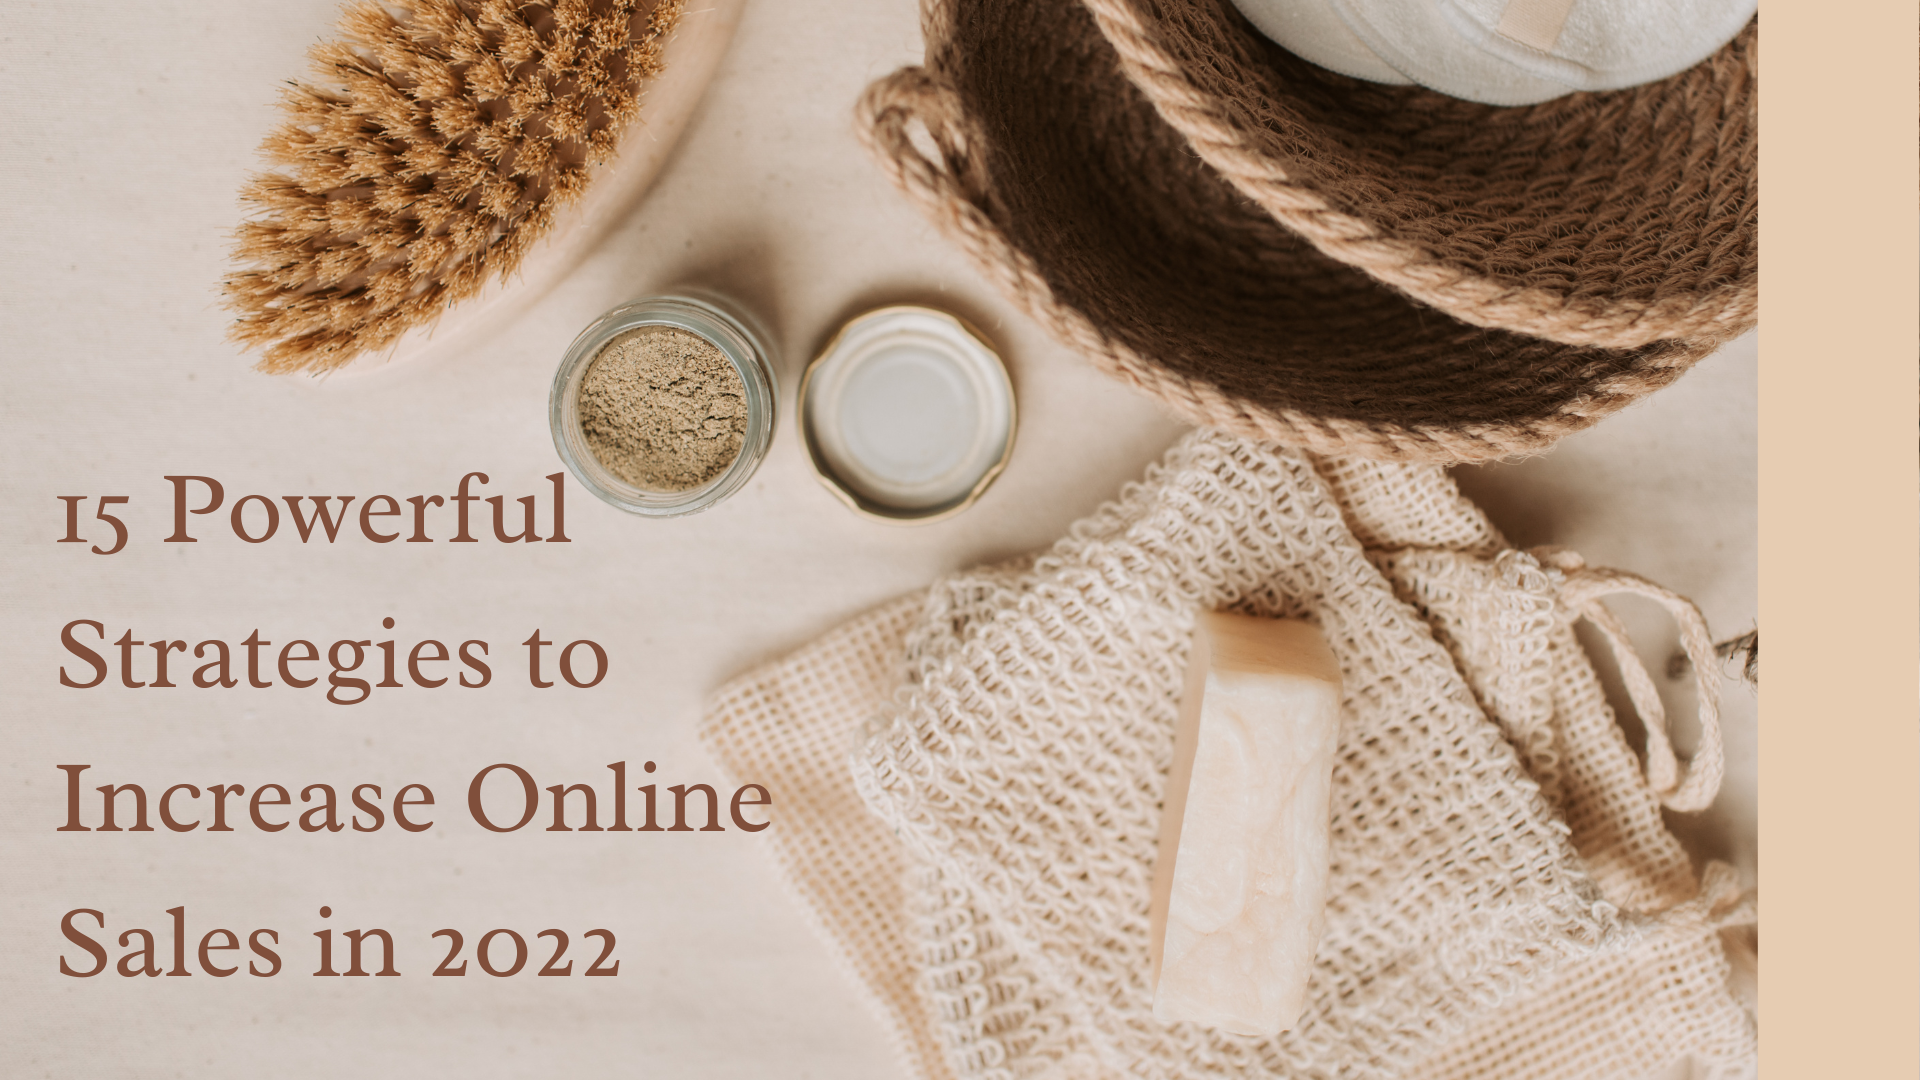 15 Powerful Strategies to Increase Online Sales in 2022